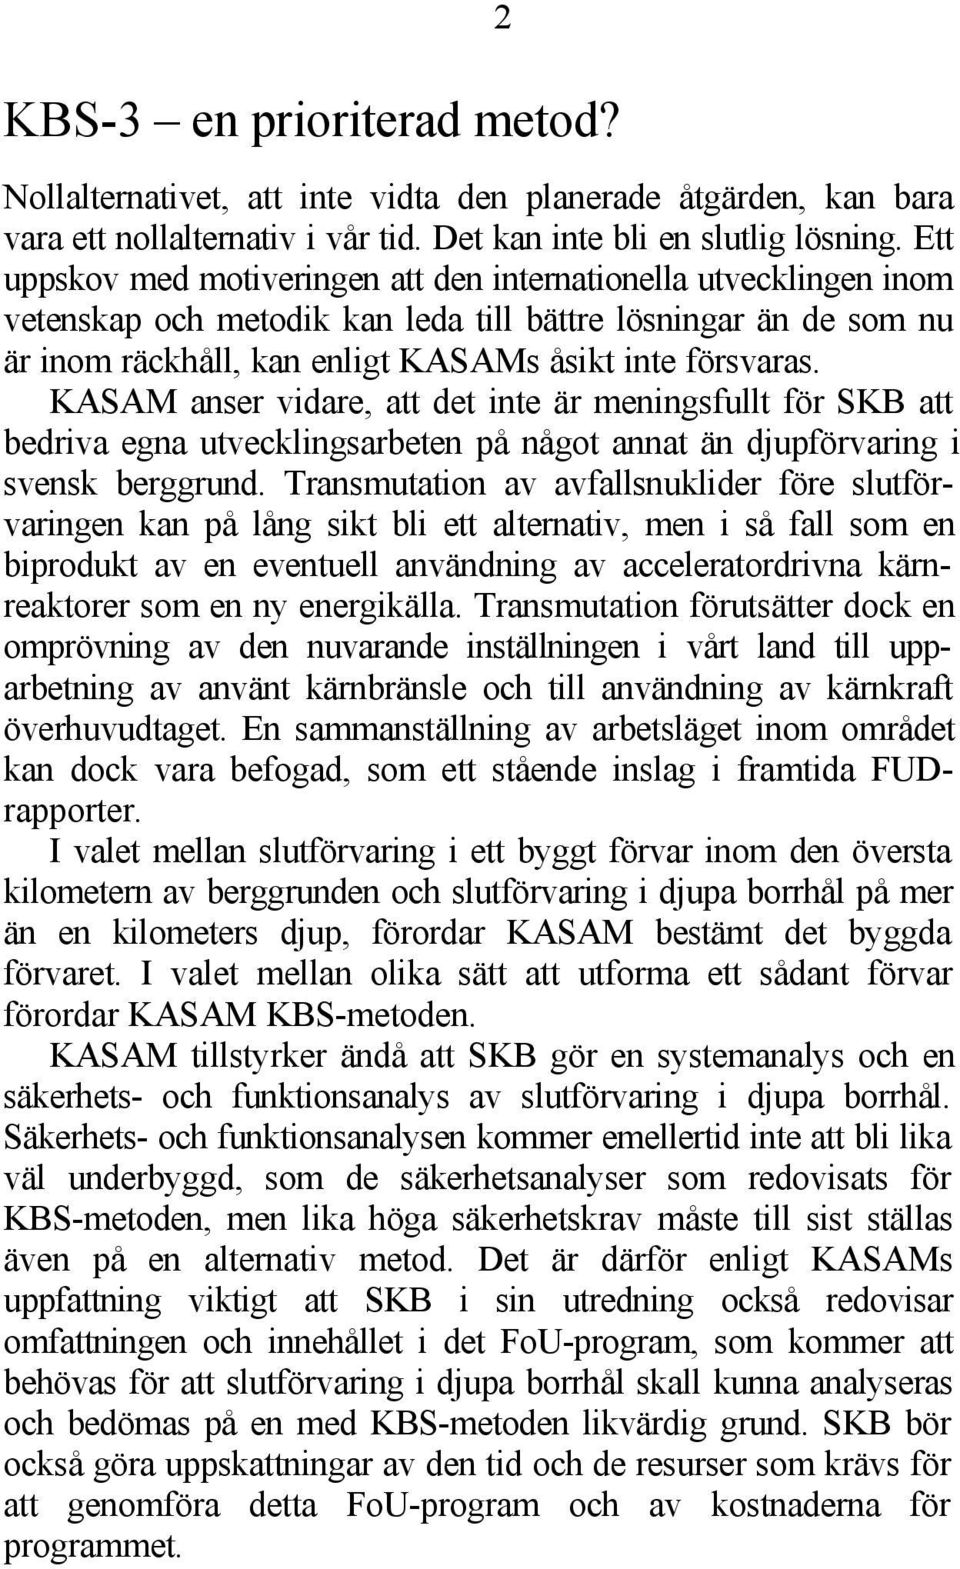 KASAM anser vidare, att det inte är meningsfullt för SKB att bedriva egna utvecklingsarbeten på något annat än djupförvaring i svensk berggrund.